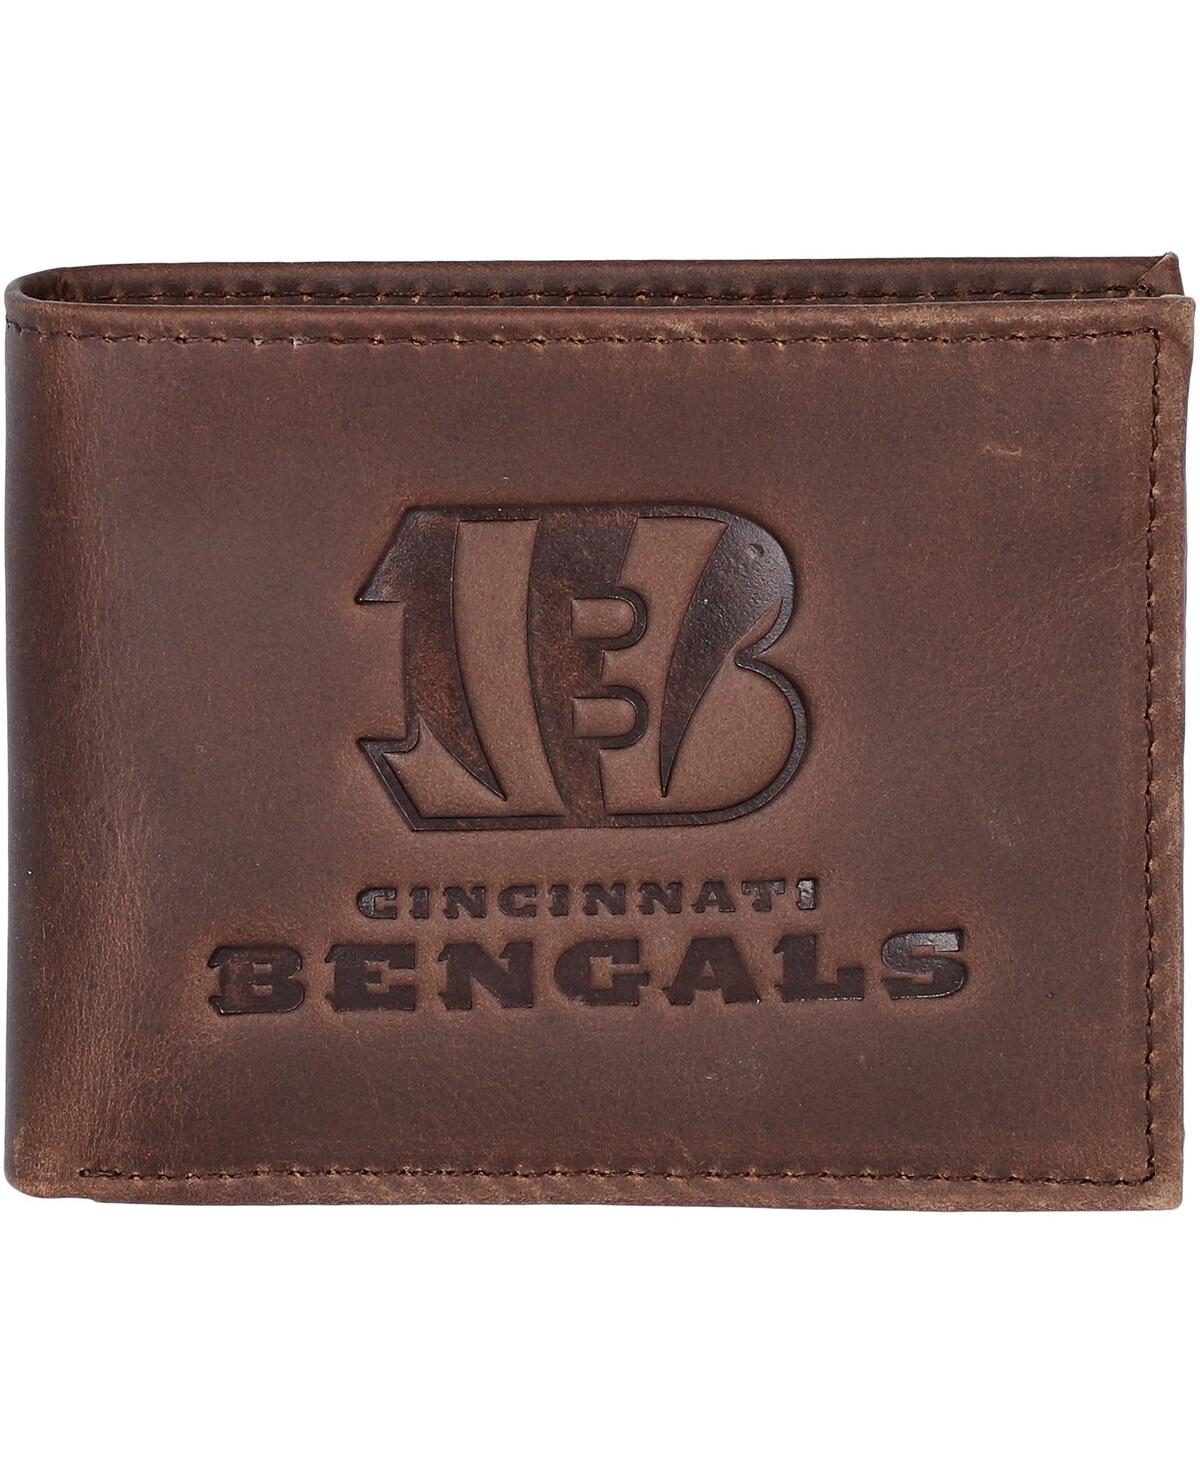 Evergreen Enterprises Men's Brown Cincinnati Bengals Bifold Leather Wallet